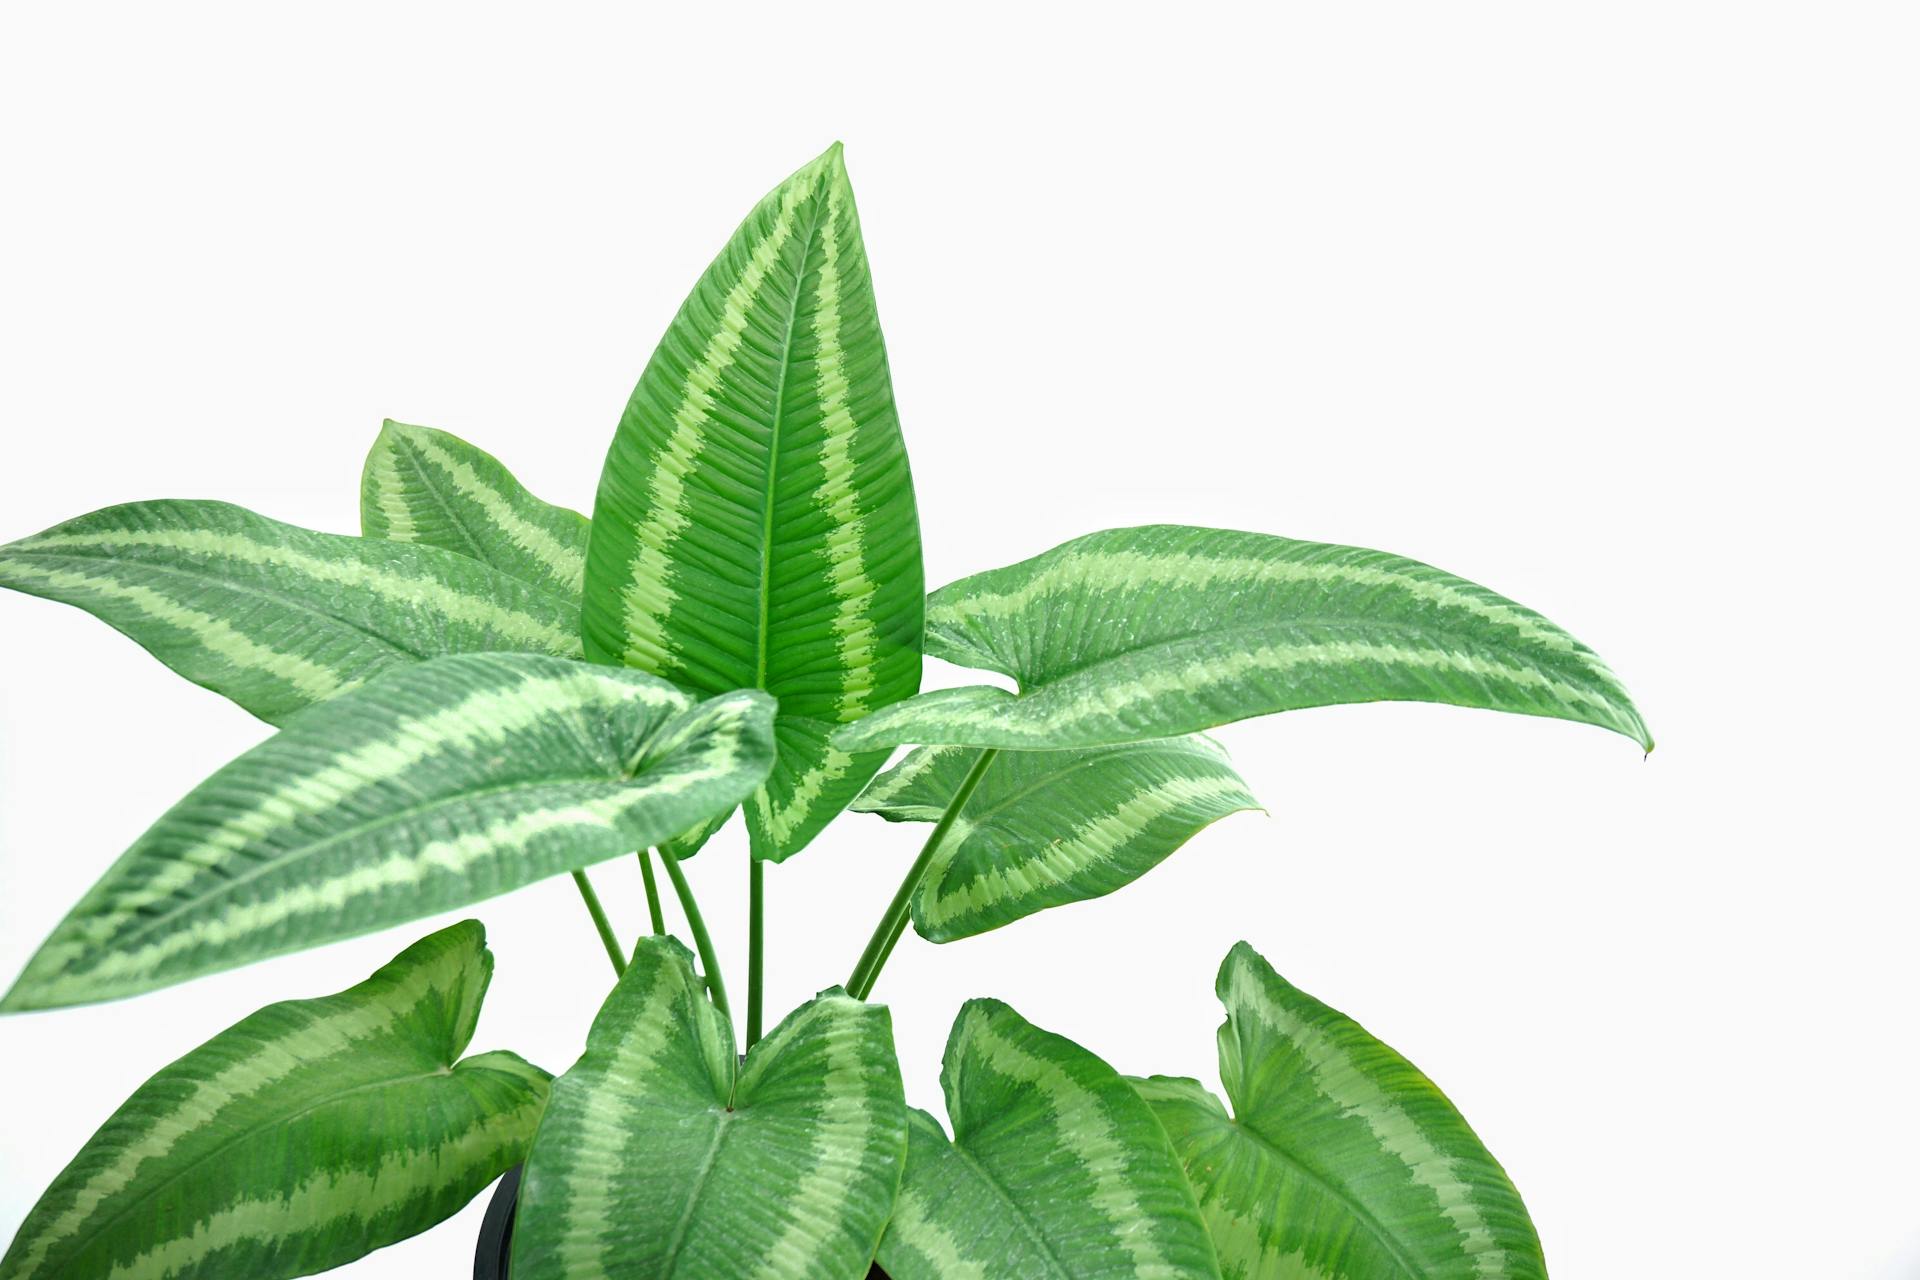 Schismatoglottis plant